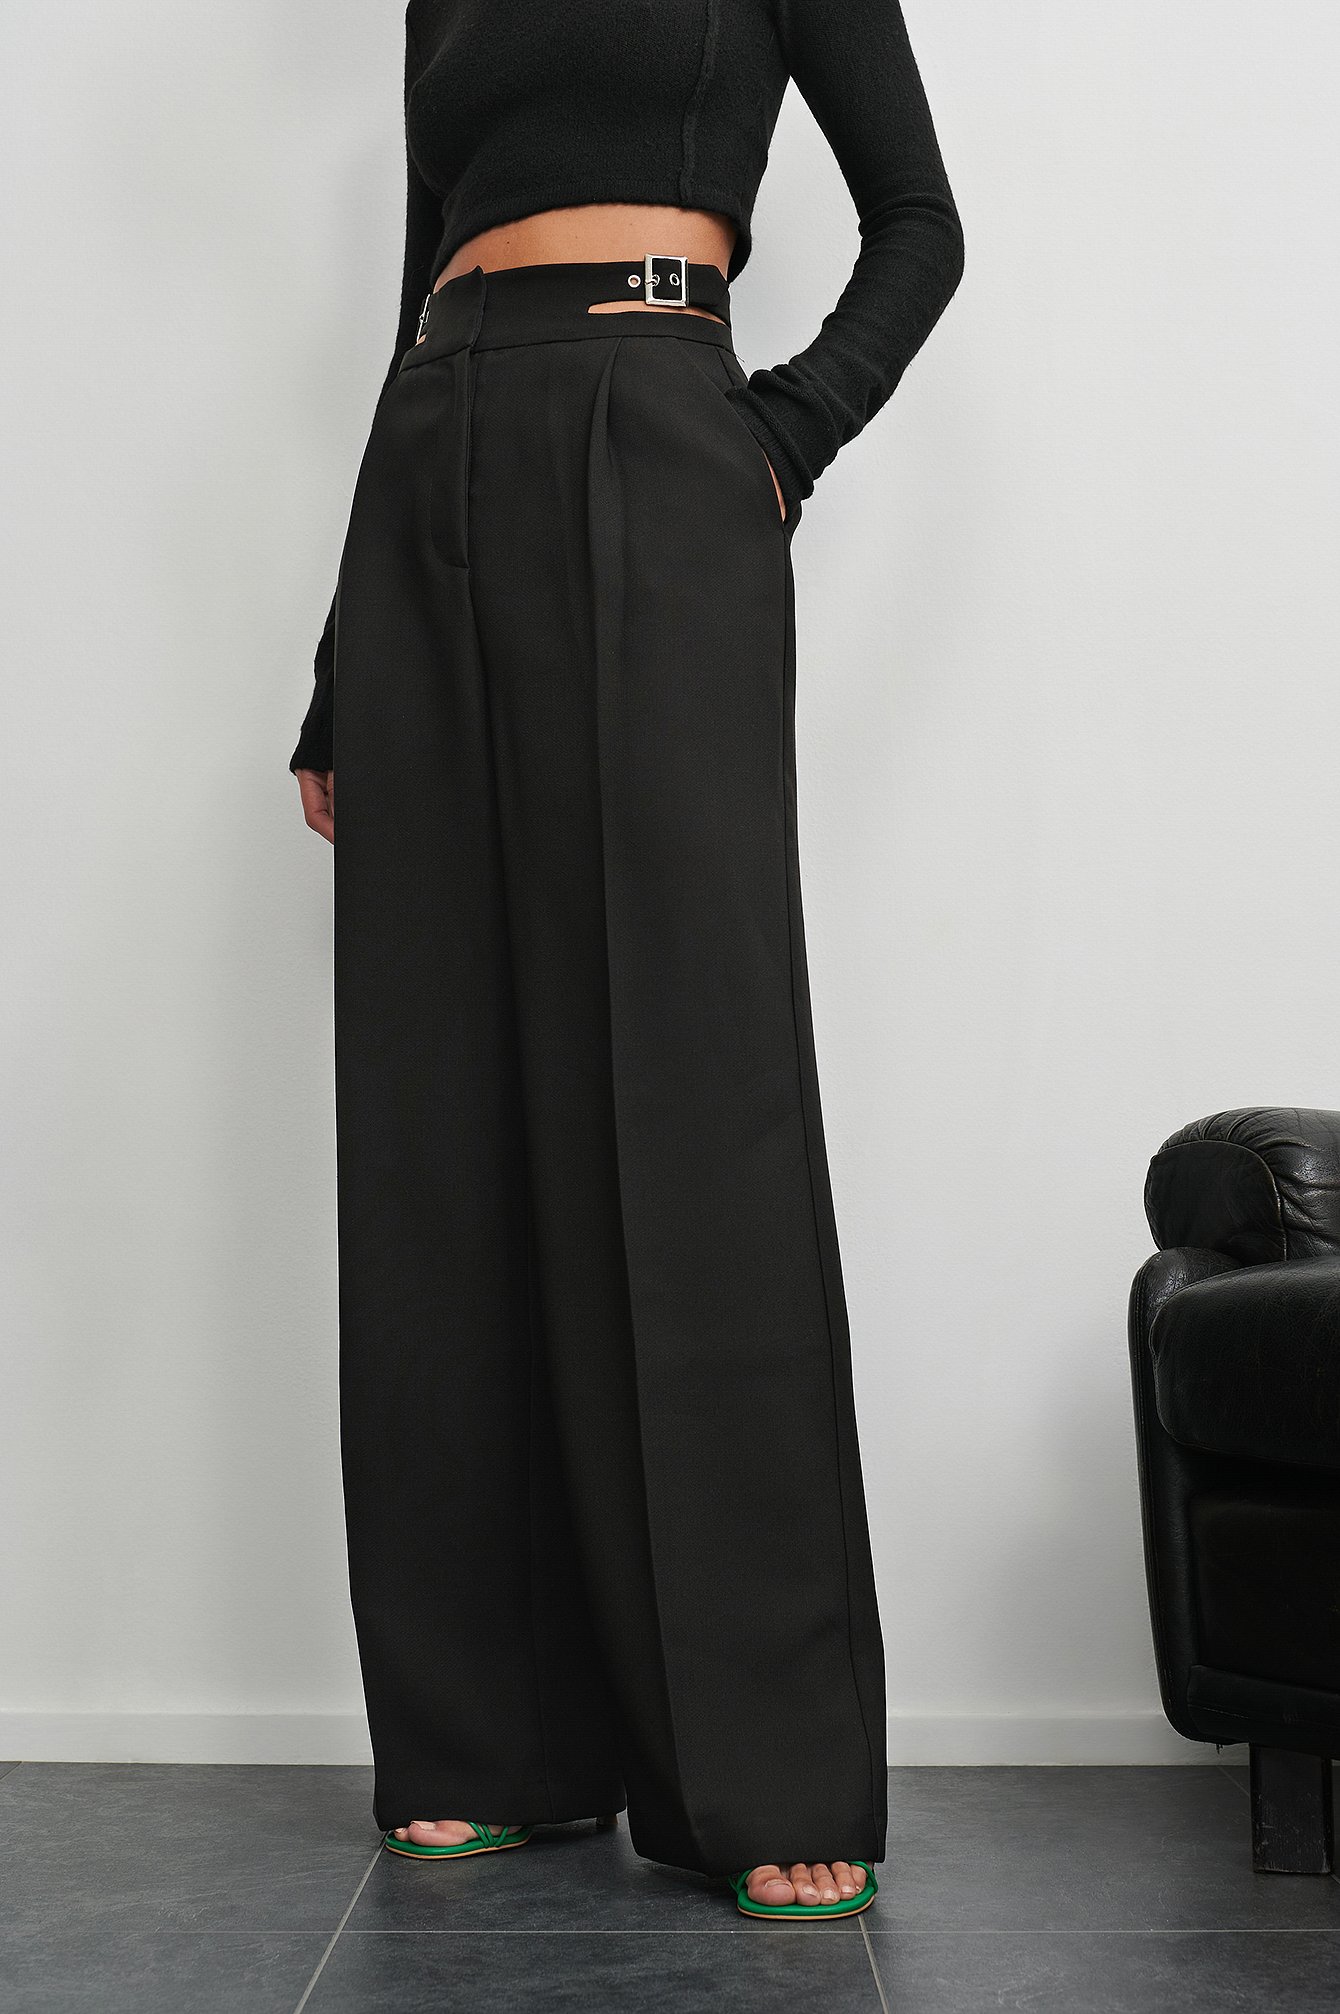 Sofia Coelho x NA-KD Buckle Detail Suit Pants - Black